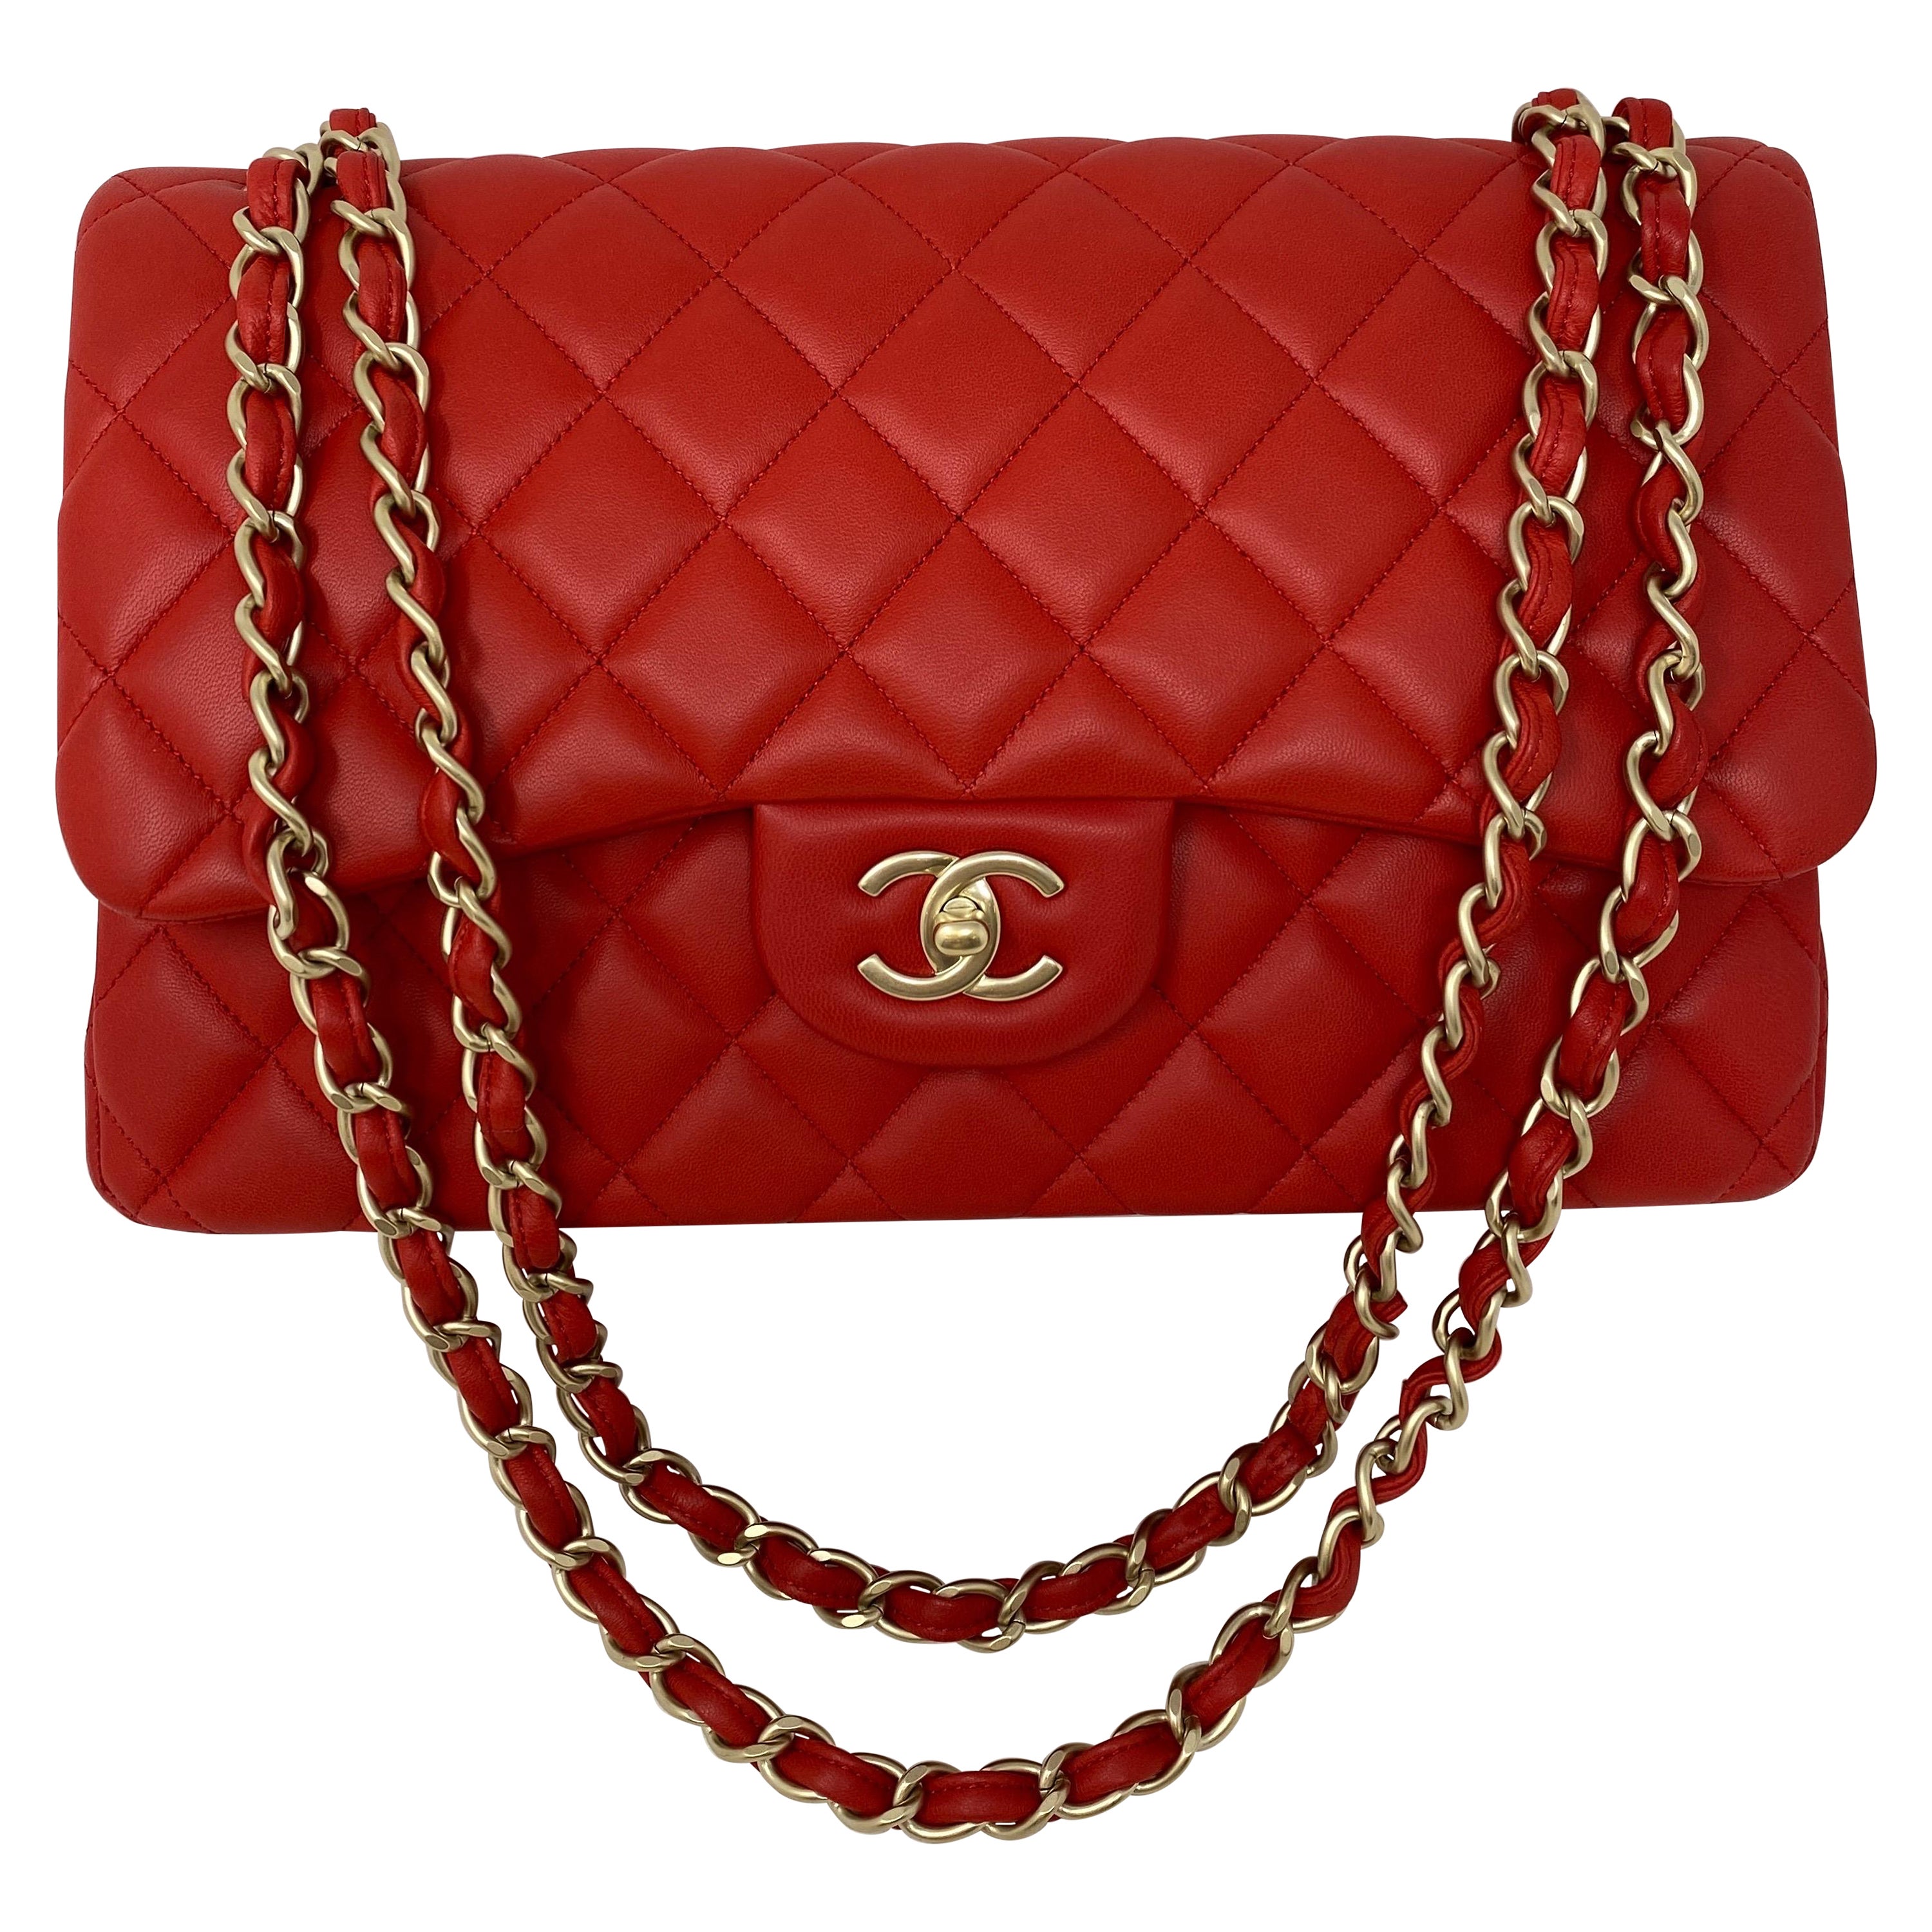 Chanel Red Jumbo Bag 